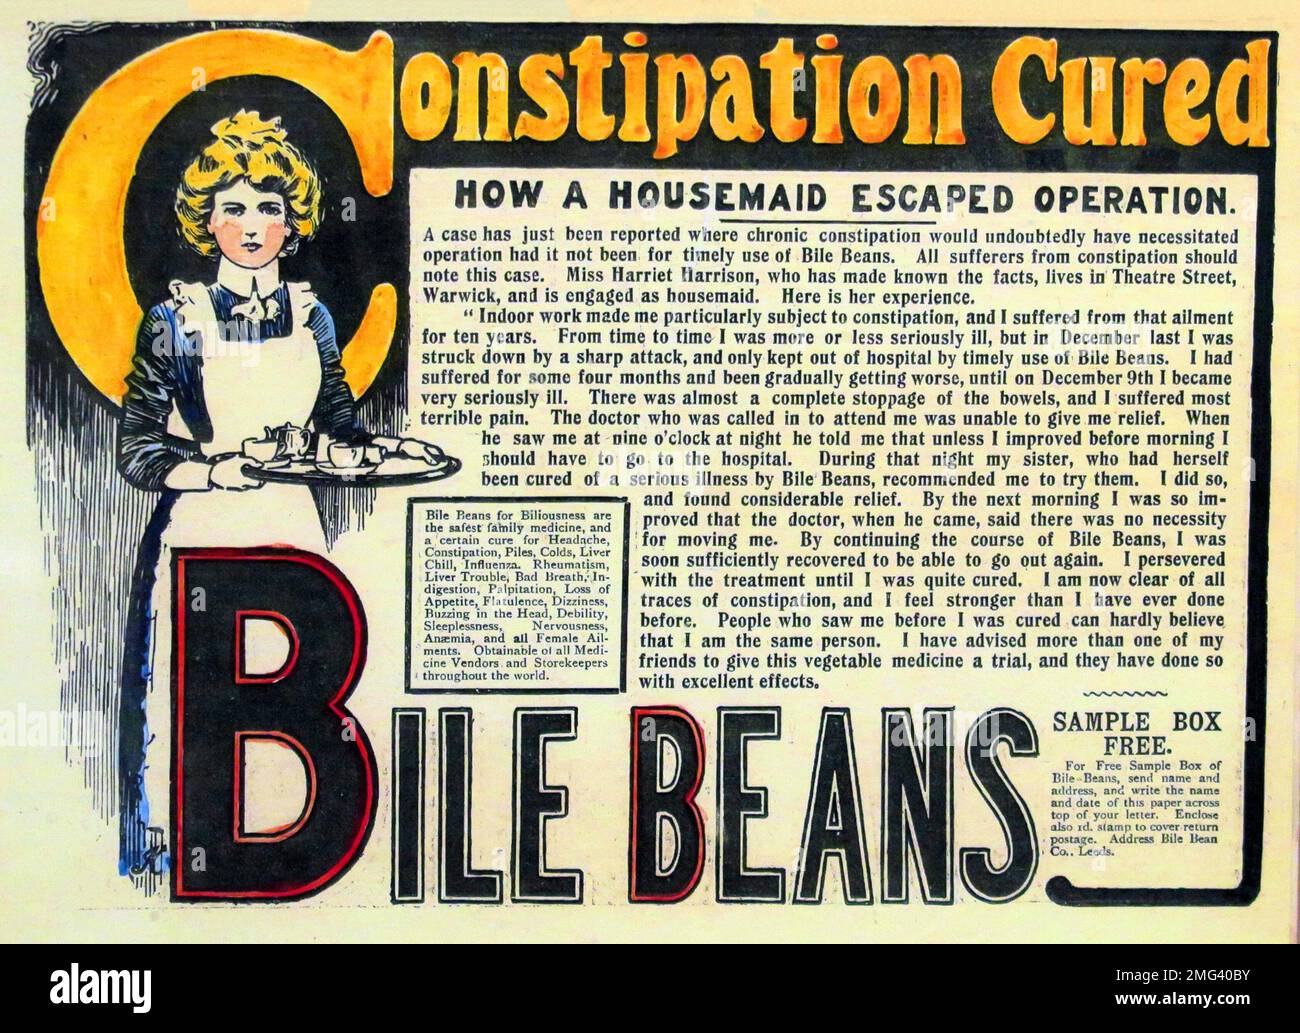 Werbung für Gallenbohnen, Verstopfung geheilt, wie ein Hausmädchen der Operation entkam, Zeitungsartikel von 1920er Stockfoto